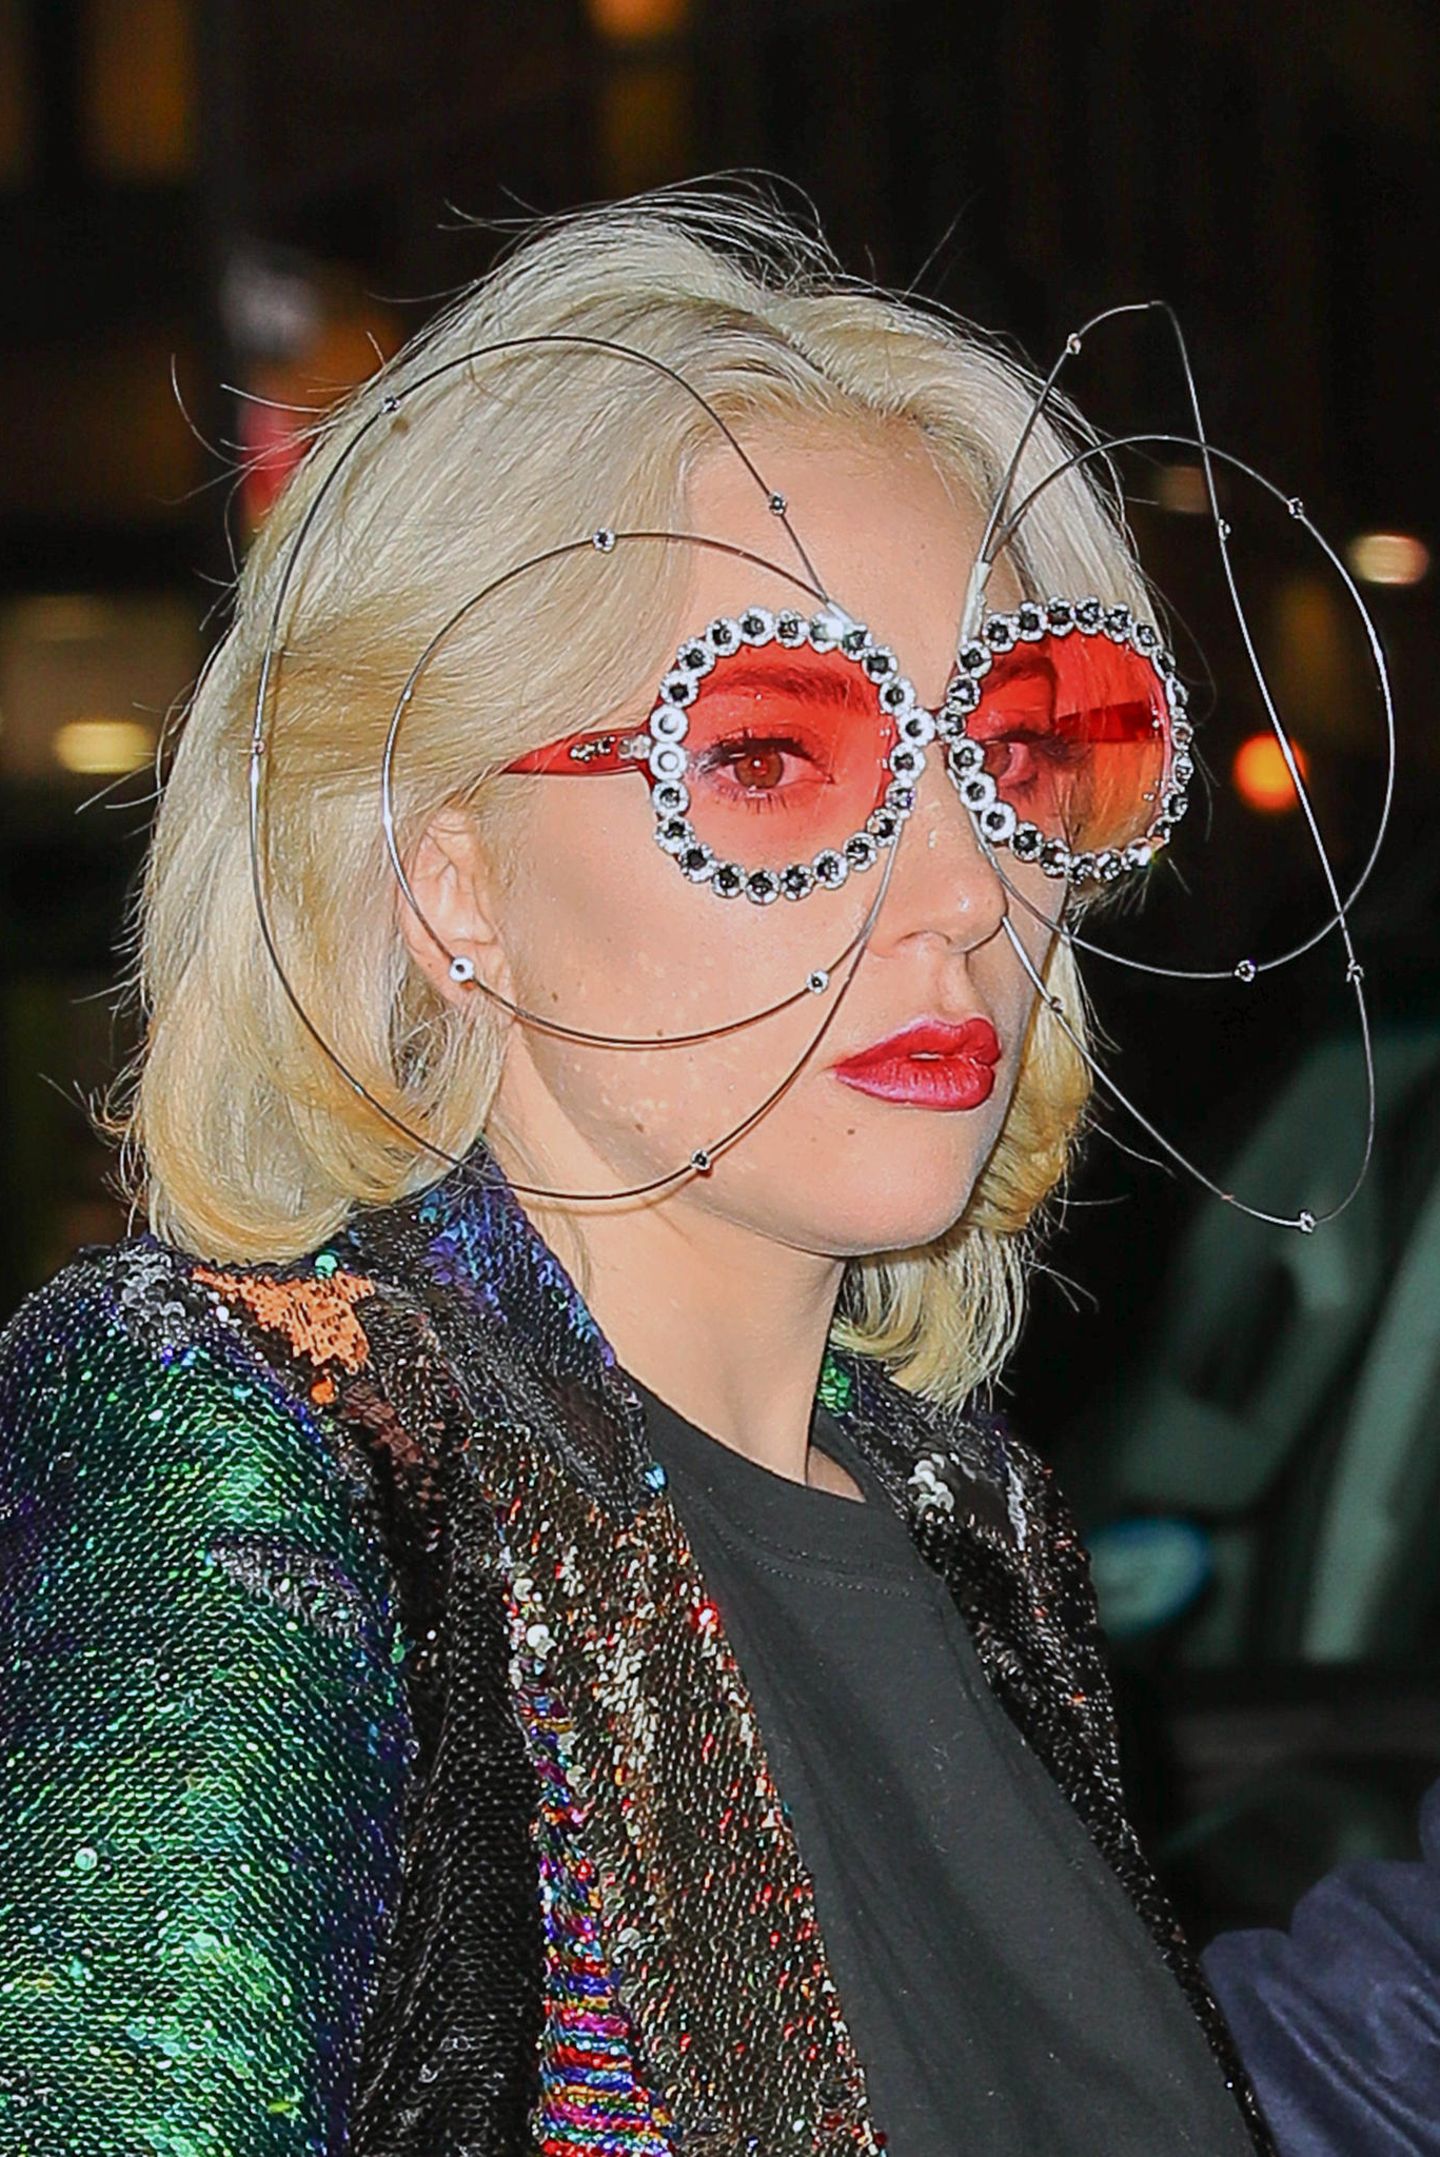 Dieses bunte Brillen-Modell erinnert ein wenig an Elton John. Paparazzi verpassen Lady Gaga mit dieser auffälligen Brille ganz bestimmt nicht. Die Sängerin kann aber auch anders.